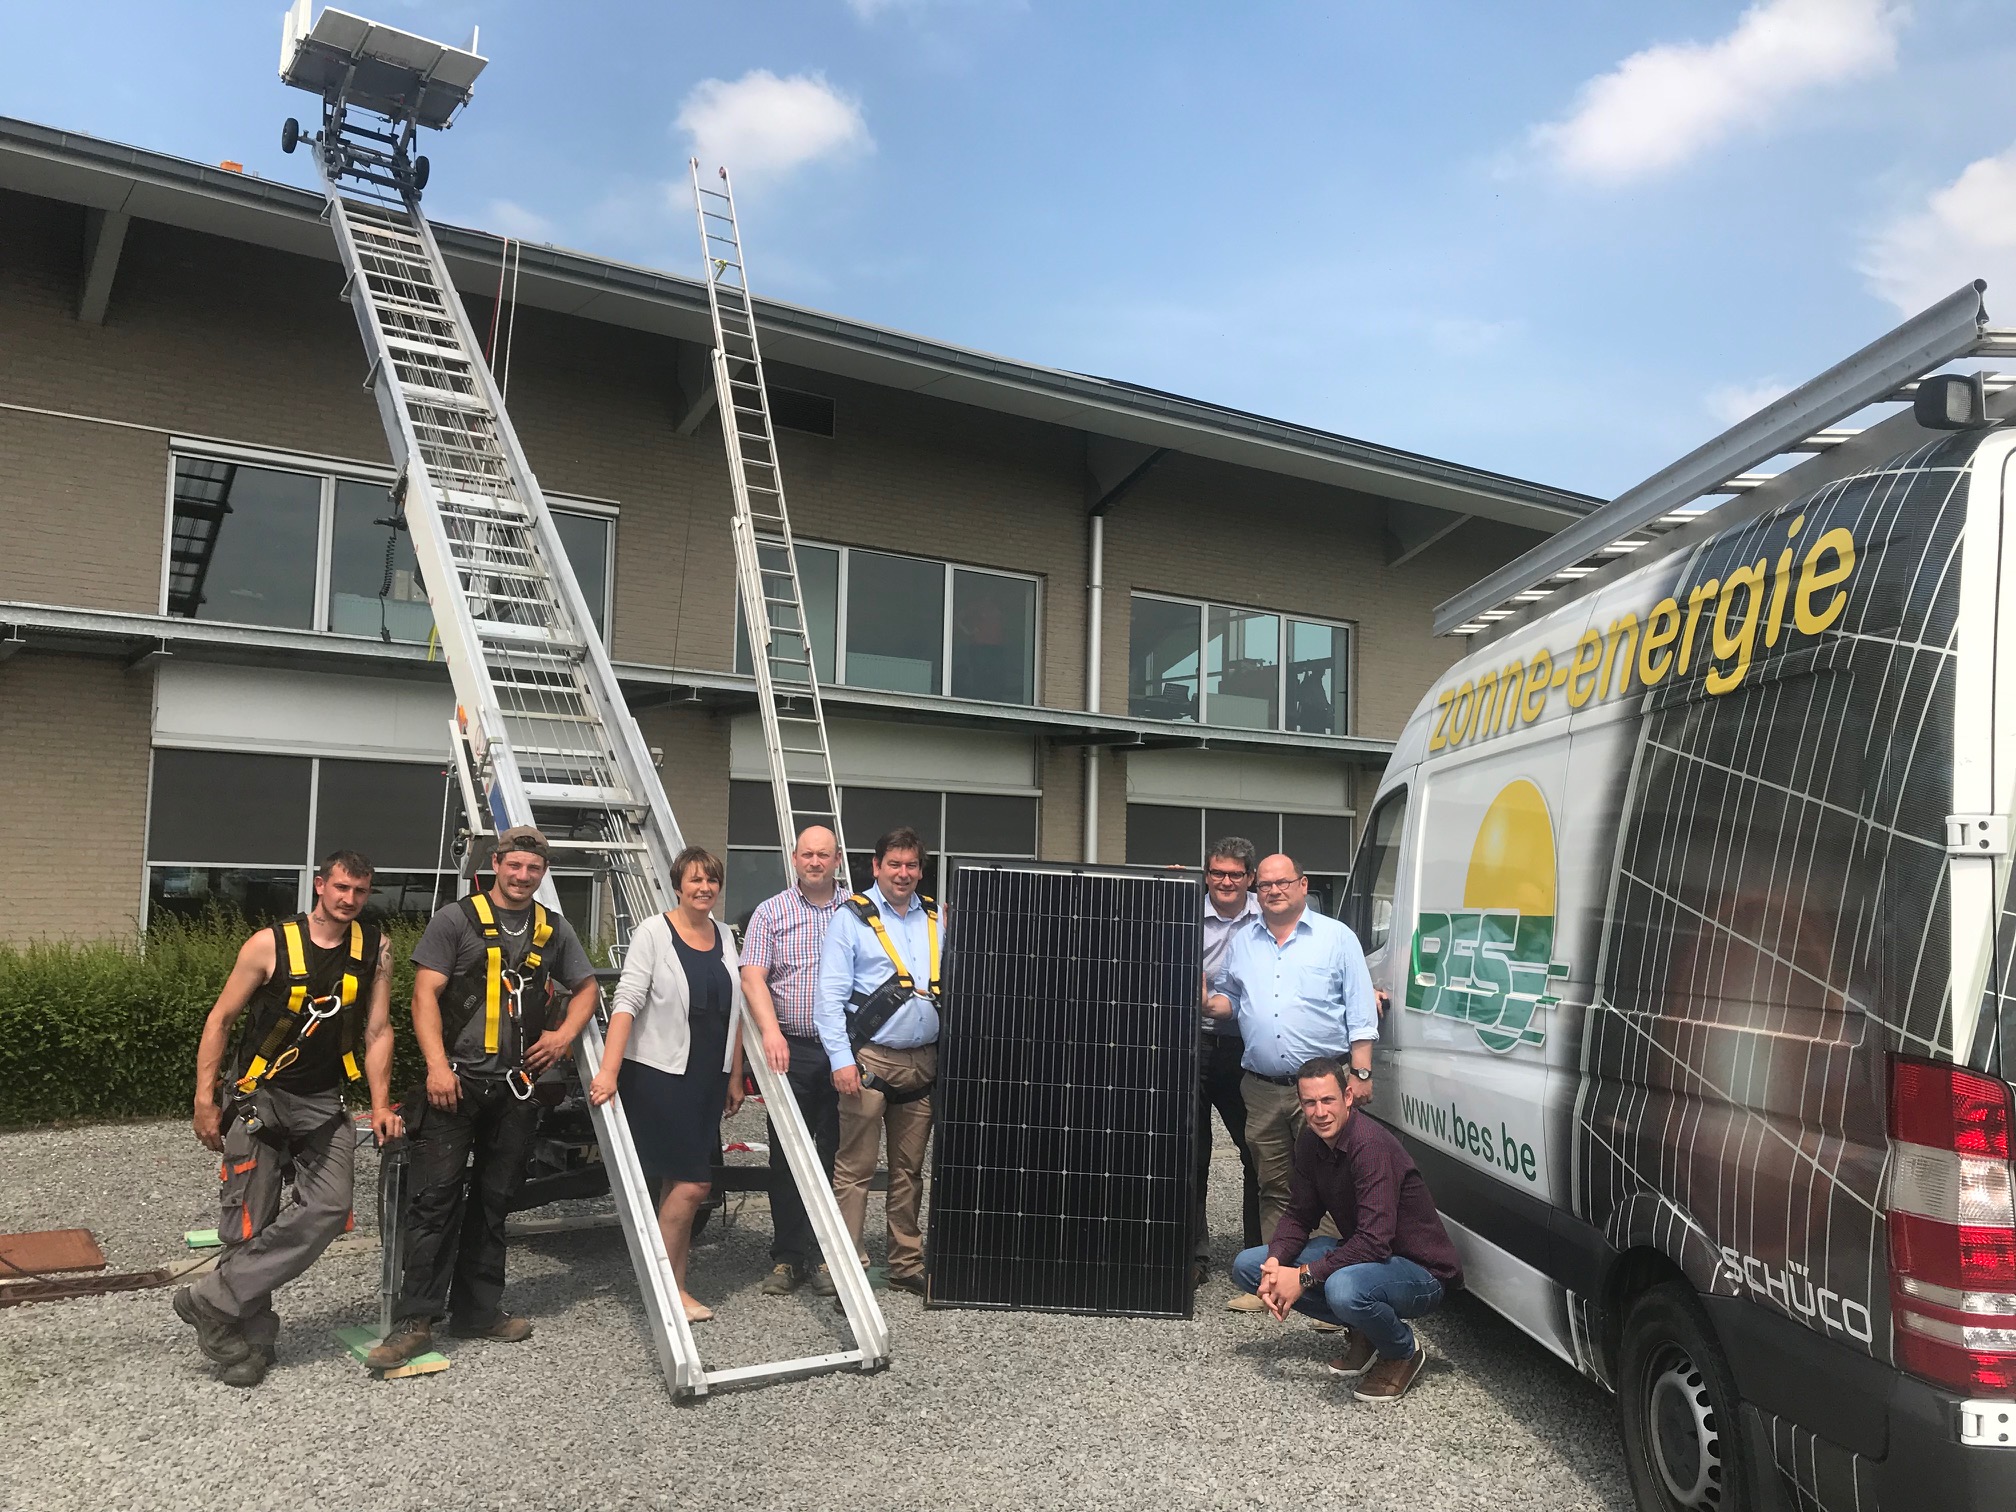 OfficIële eerste paneellegging zonnepanelen openbare gebouwen te Ledegem